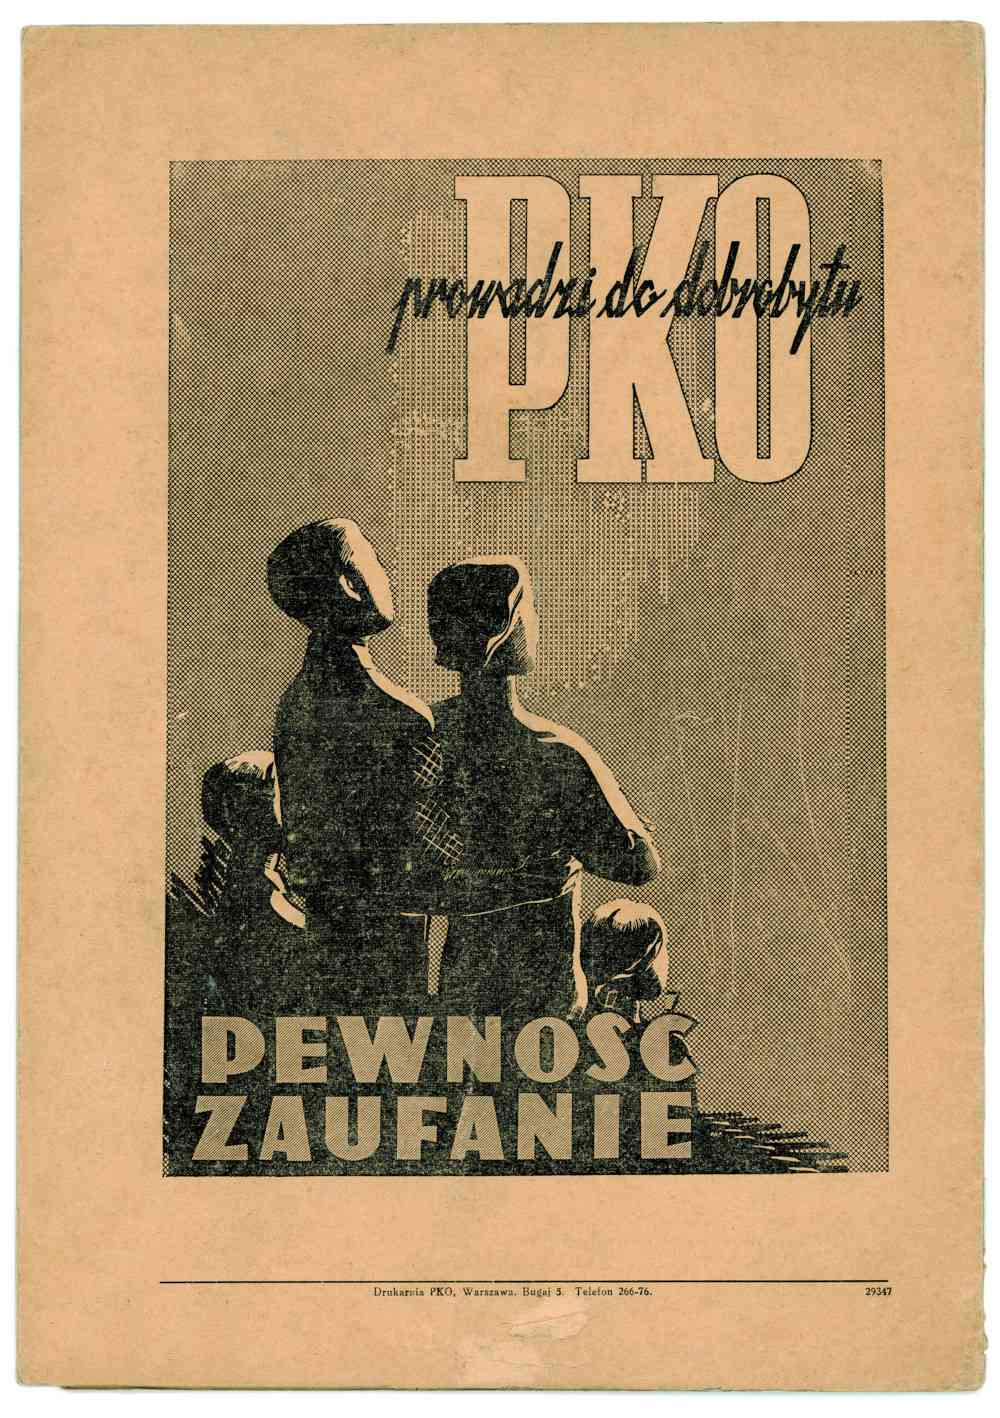 Reklama PKO z ostatniej strony magazynu Myśl o przyszłości. Fot. Archiwum PKO Banku Polskiego.